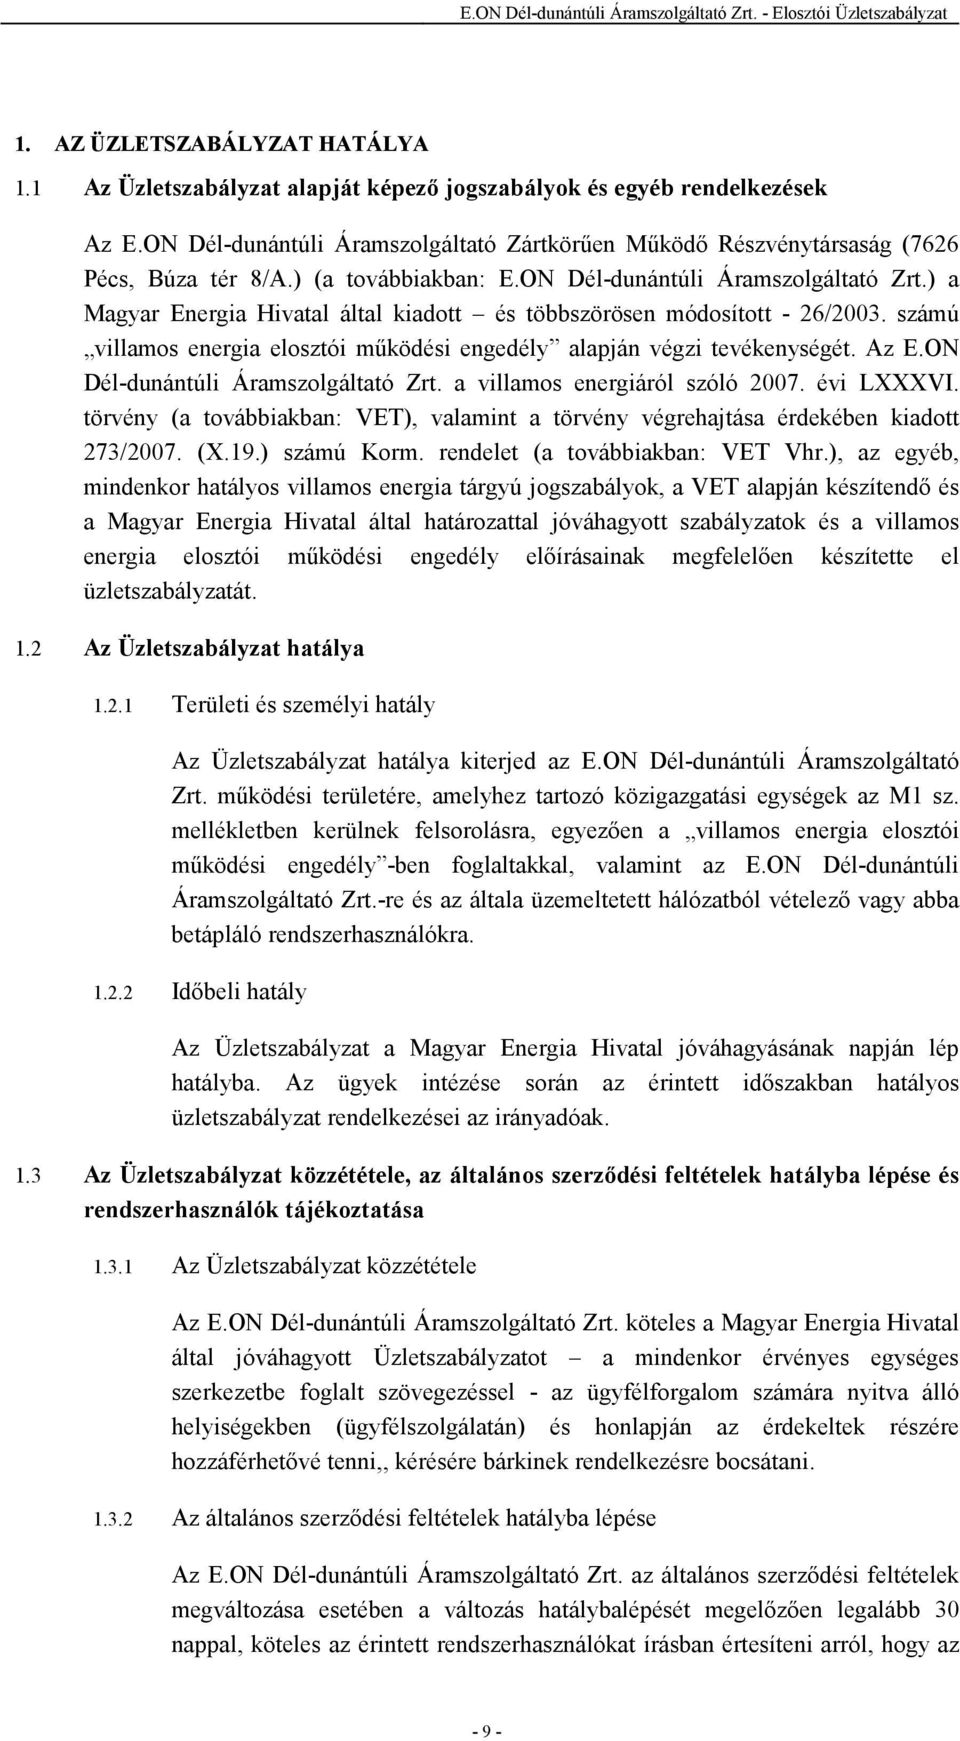 ) a Magyar Energia Hivatal által kiadott és többszörösen módosított - 26/2003. számú villamos energia elosztói mőködési engedély alapján végzi tevékenységét. Az E.ON Dél-dunántúli Áramszolgáltató Zrt.